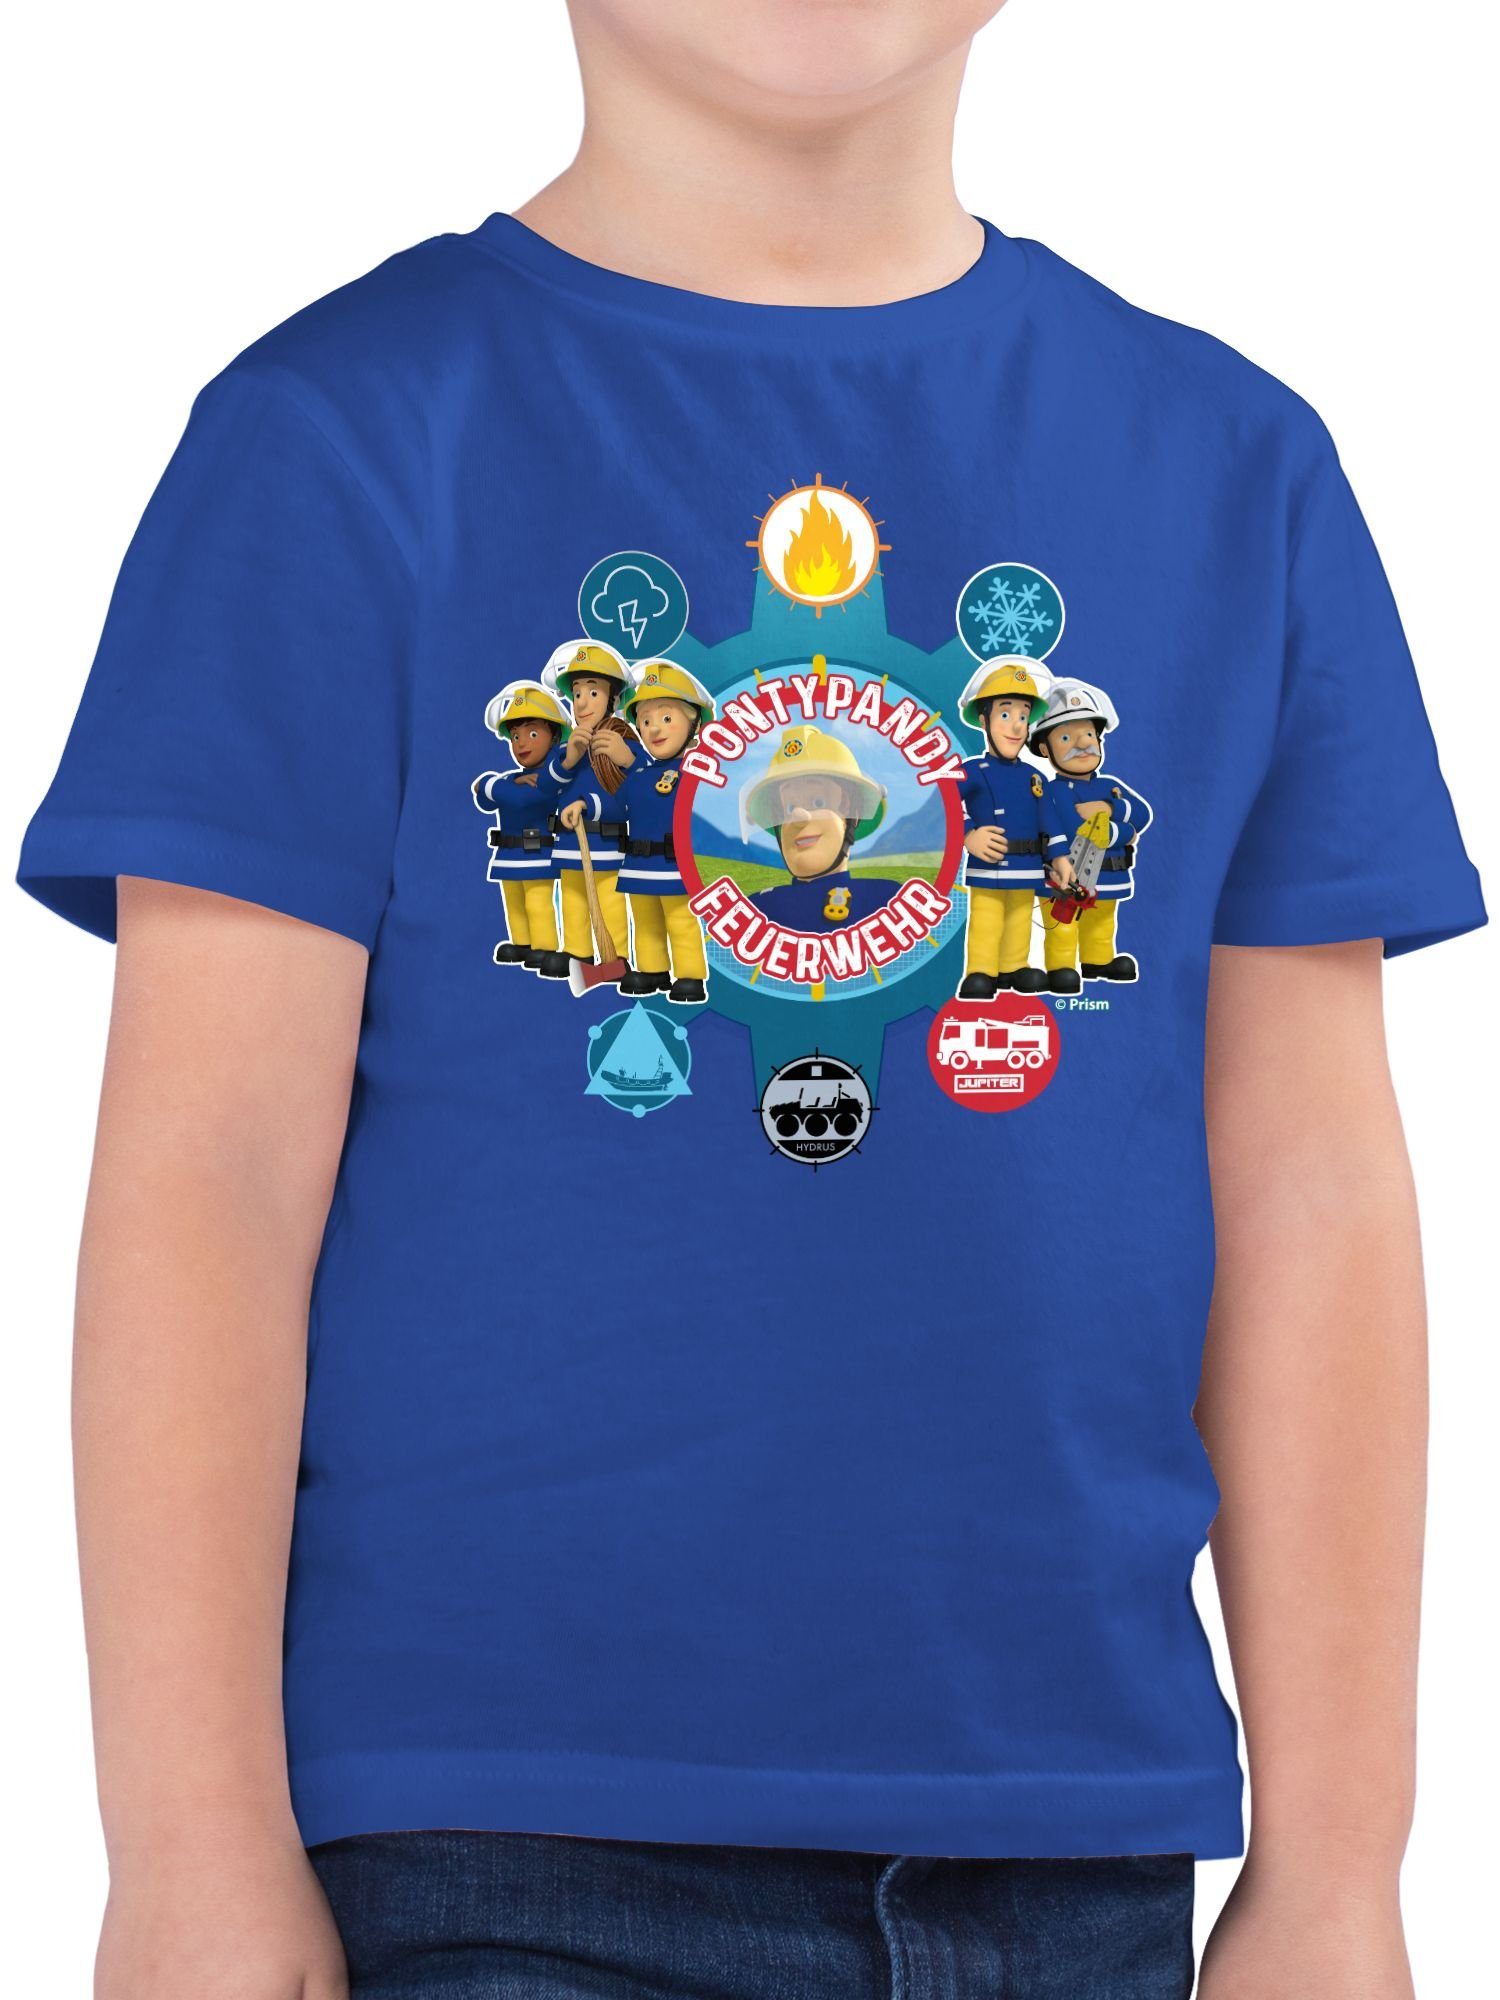 Sam Pontypandy Feuerwehrmann T-Shirt Royalblau Jungen Shirtracer Feuerwehr 01